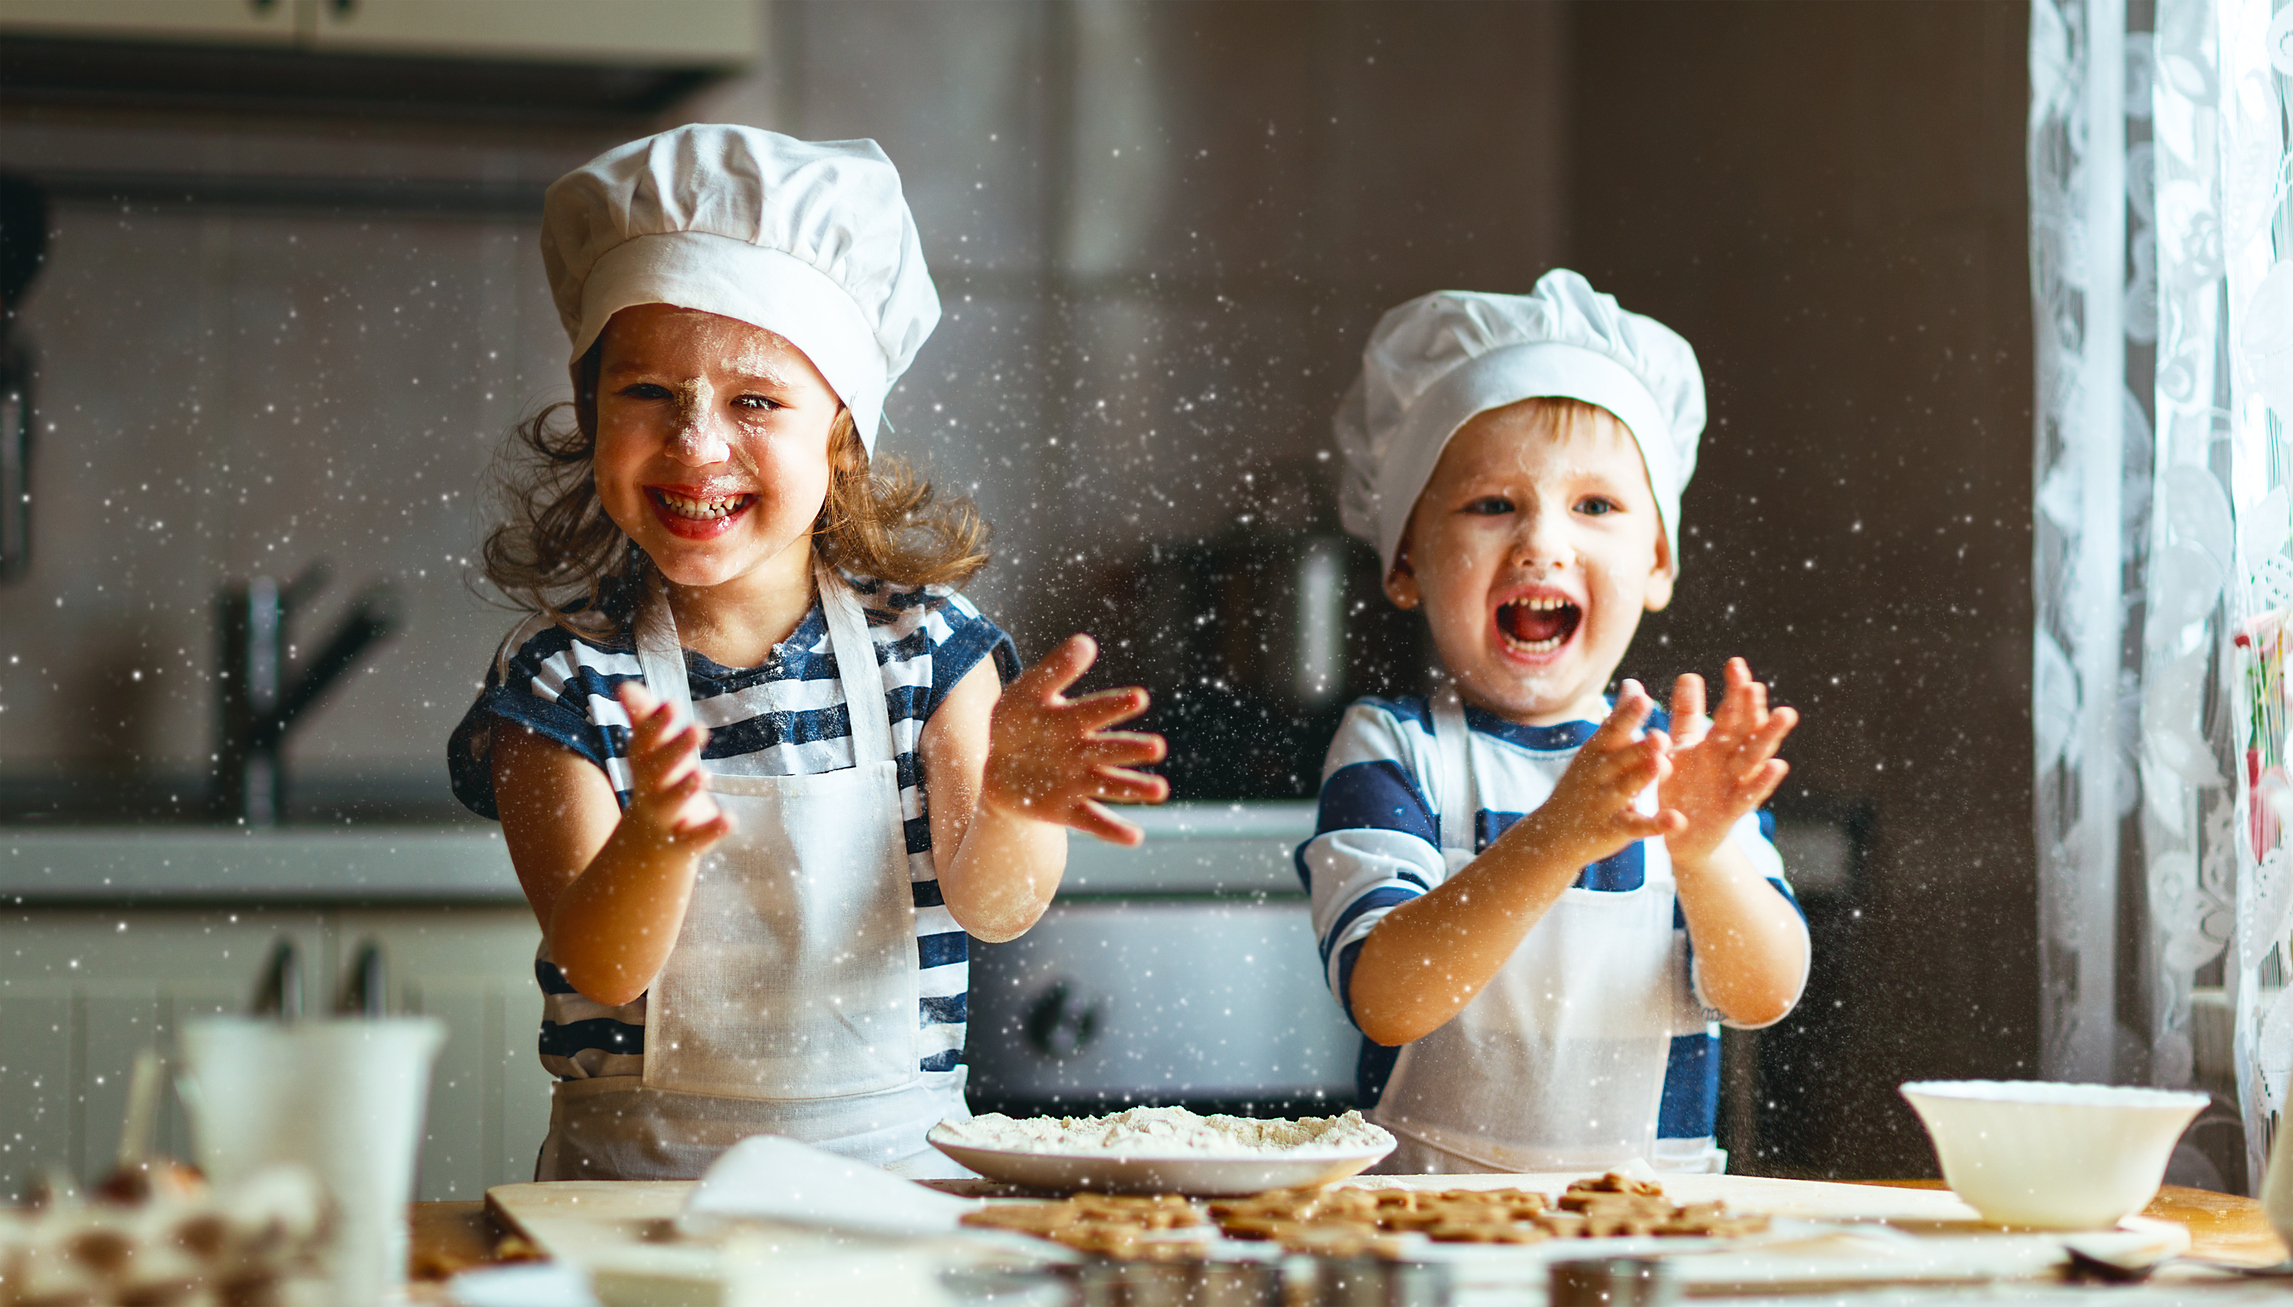 Crianças na cozinha preparando massa, usando avental branco e chapéu de chef